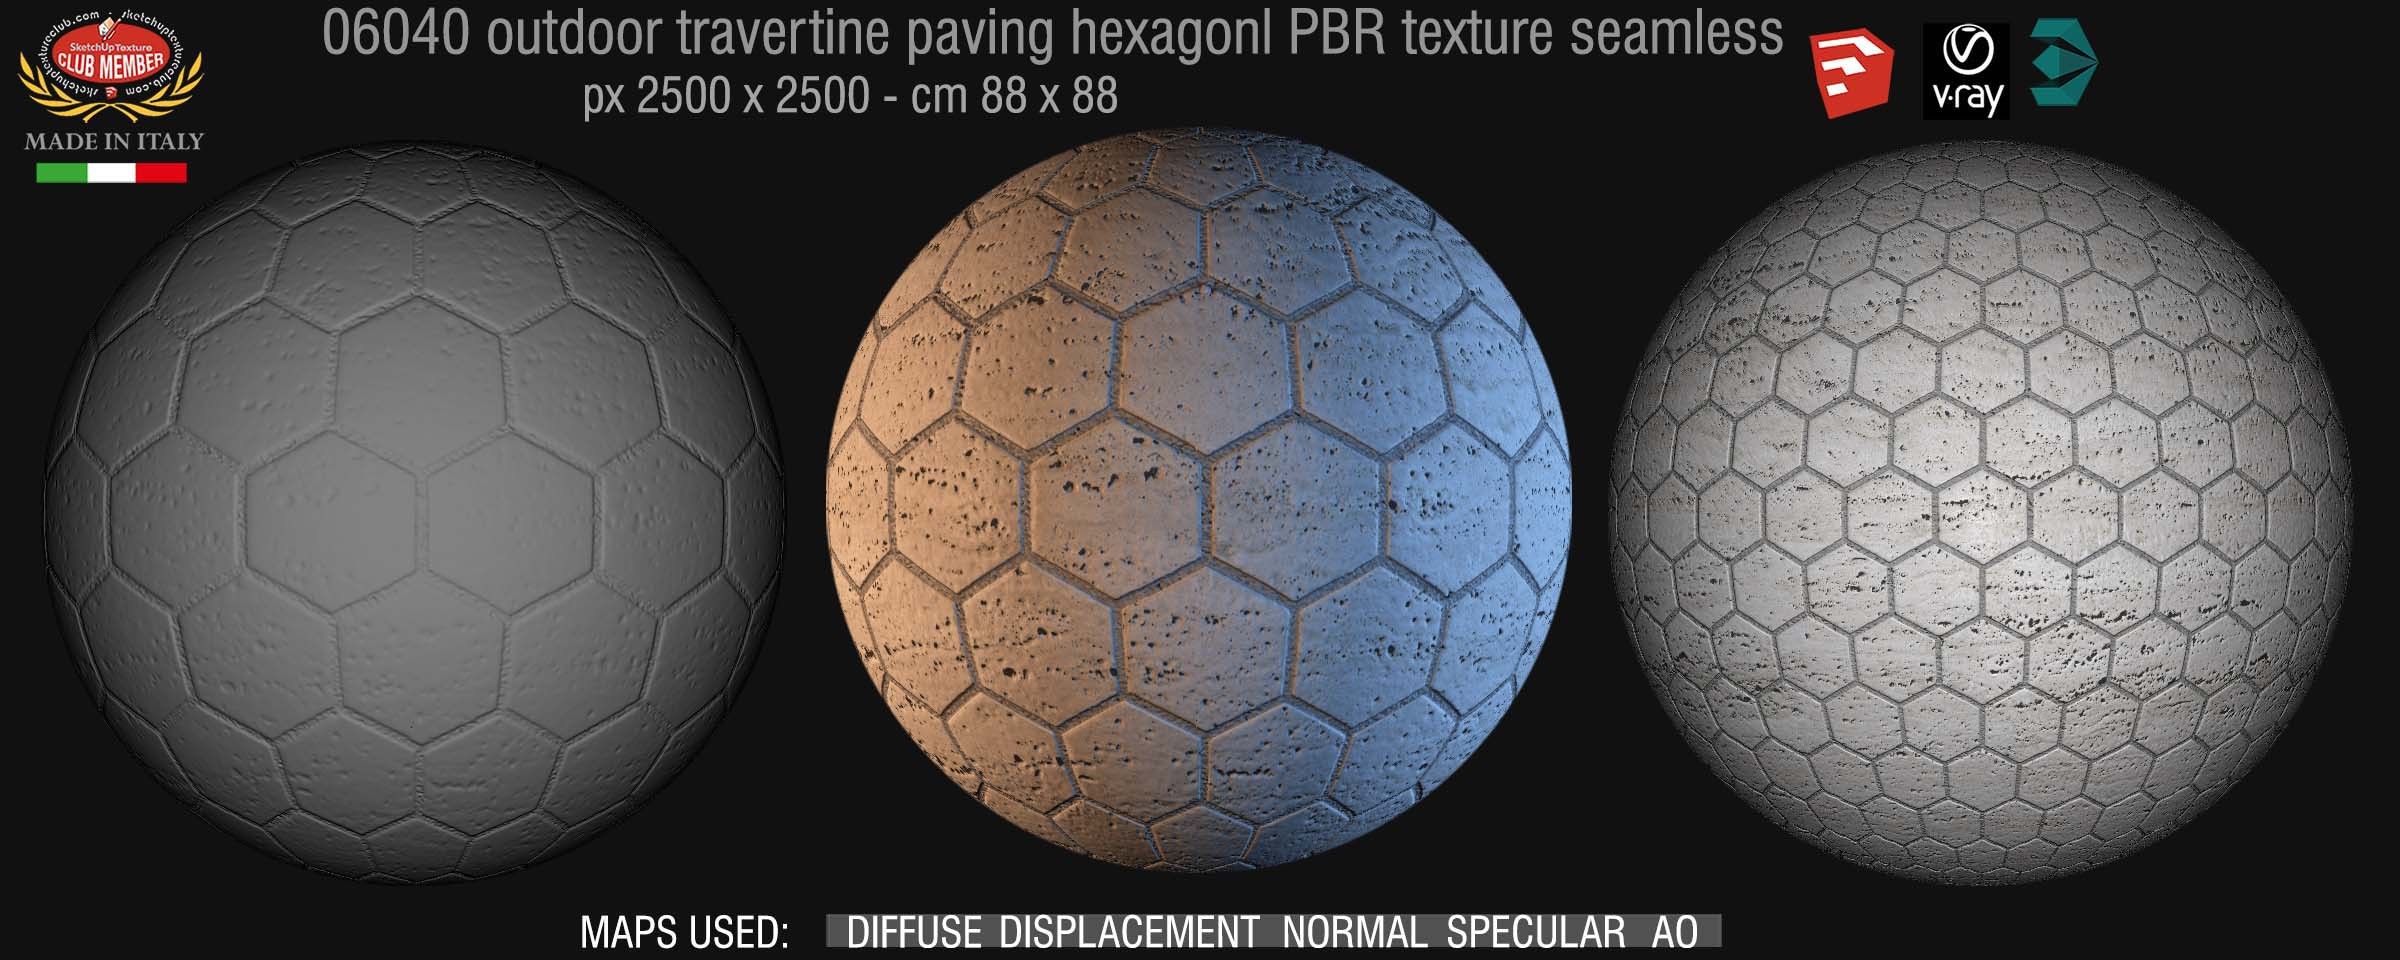 06040 outdoor travertine paving hexagonl PBR texture seamless DEMO